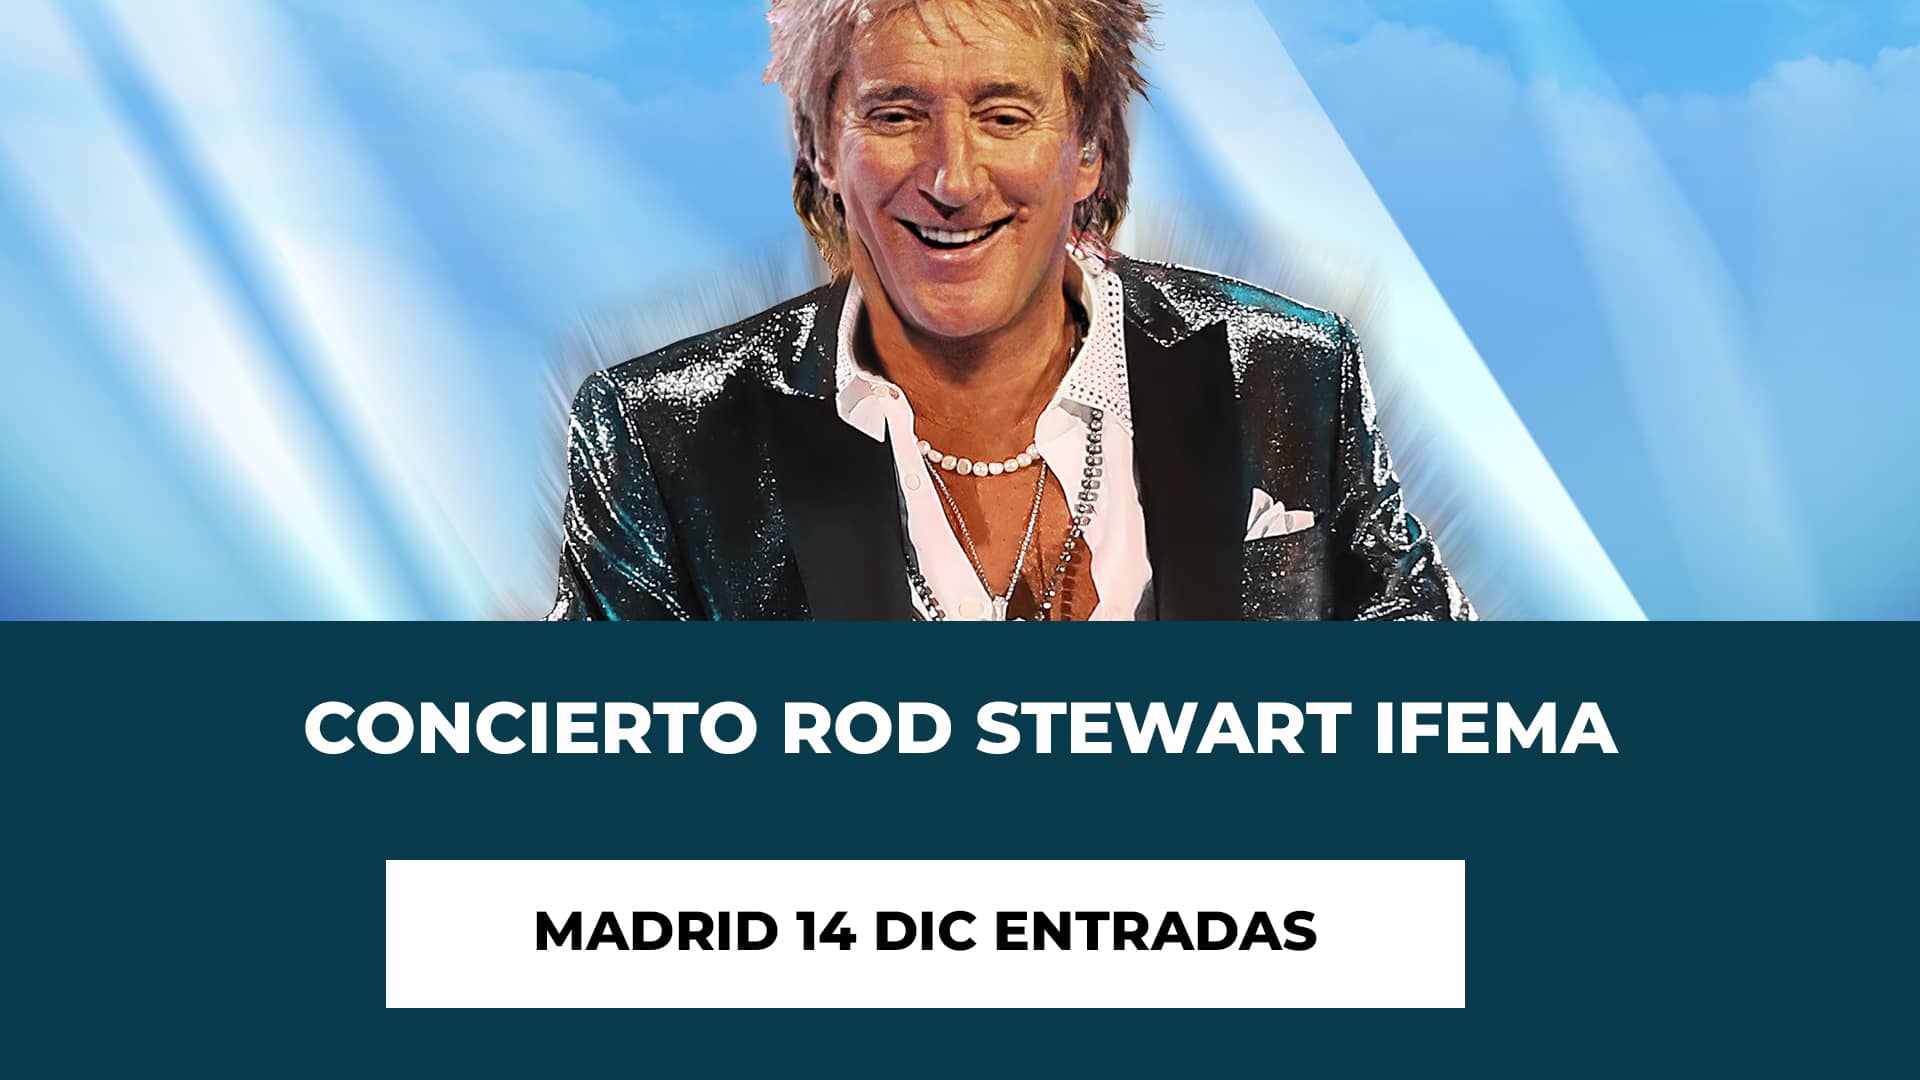 Concierto Rod Stewart Ifema Madrid 14 Dic Entradas - Fecha - Hora de Inicio - Recinto - Precio de las Entradas